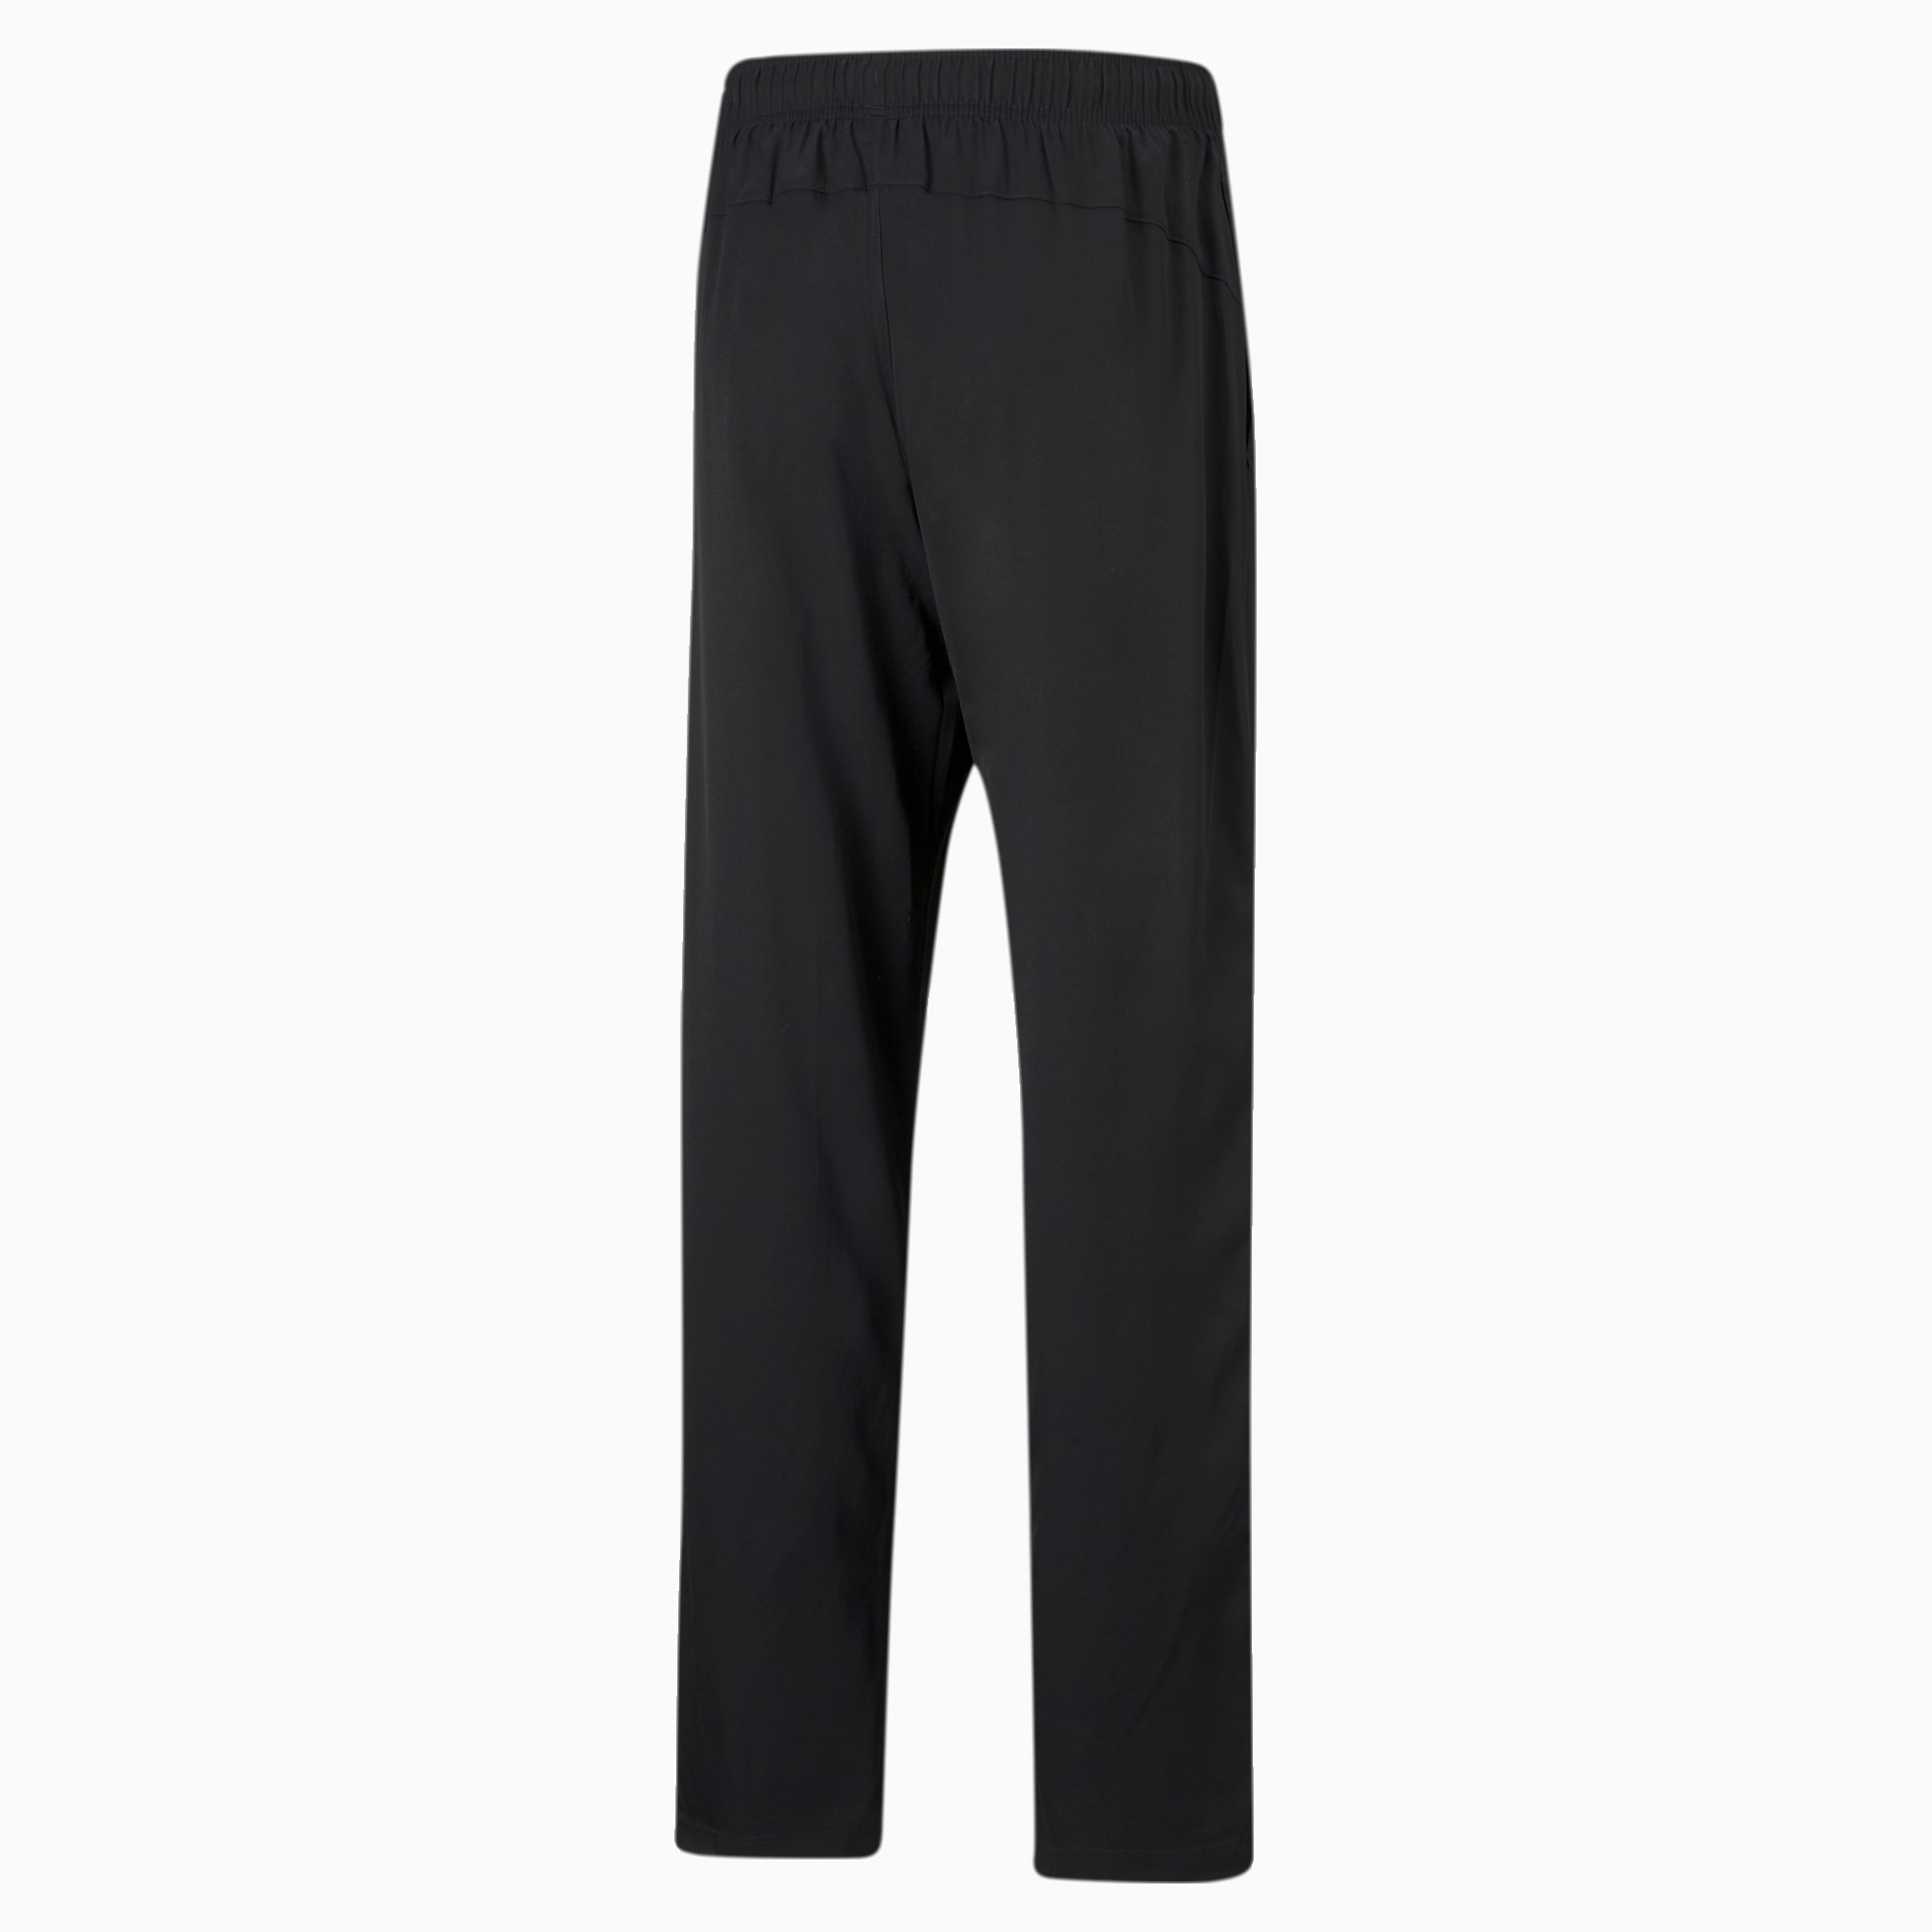 PUMA Active Woven Men's Sweatpants, Black, Size XL, Clothing